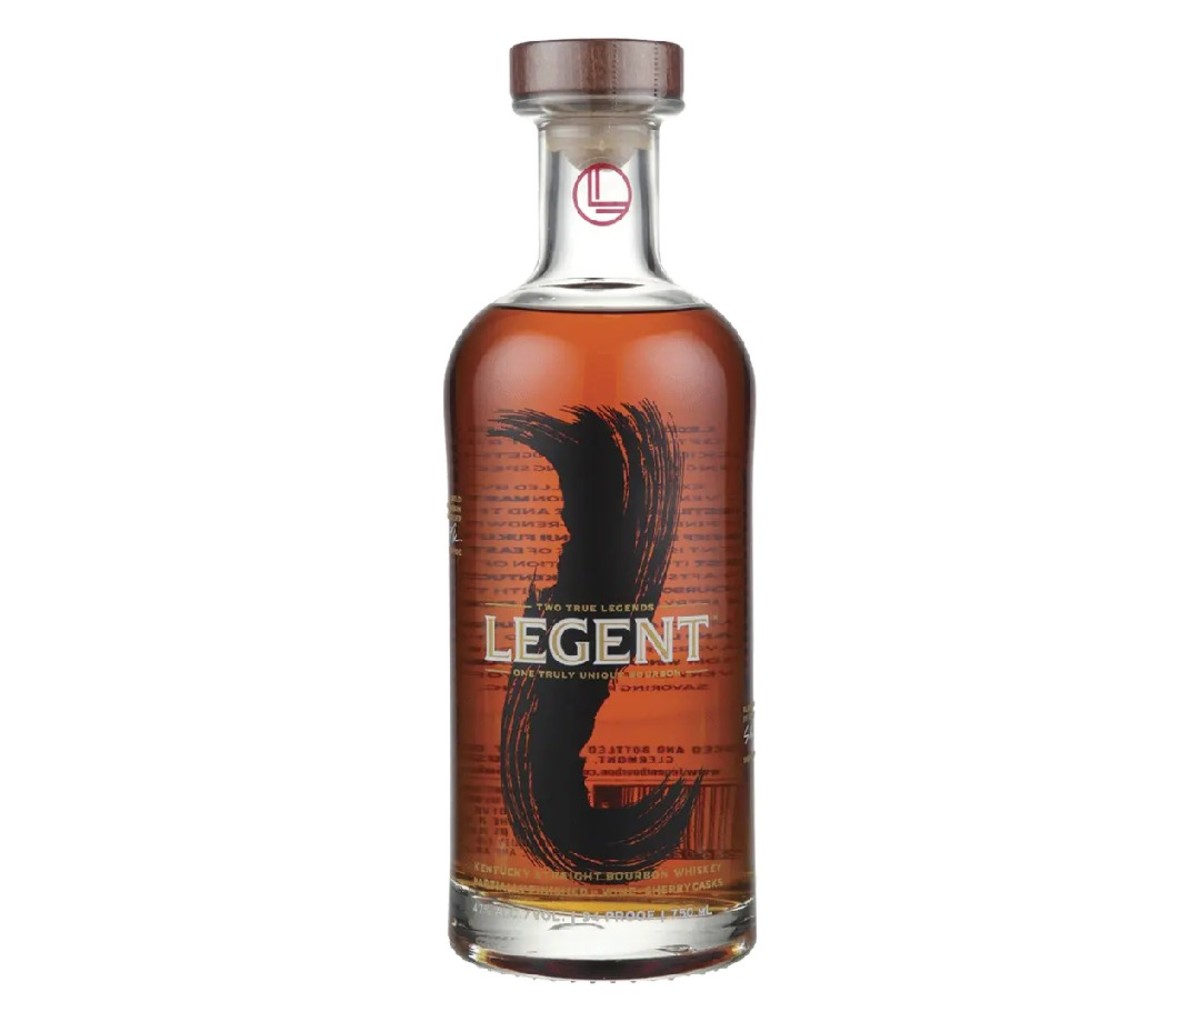 Bottle of Legent Bourbon